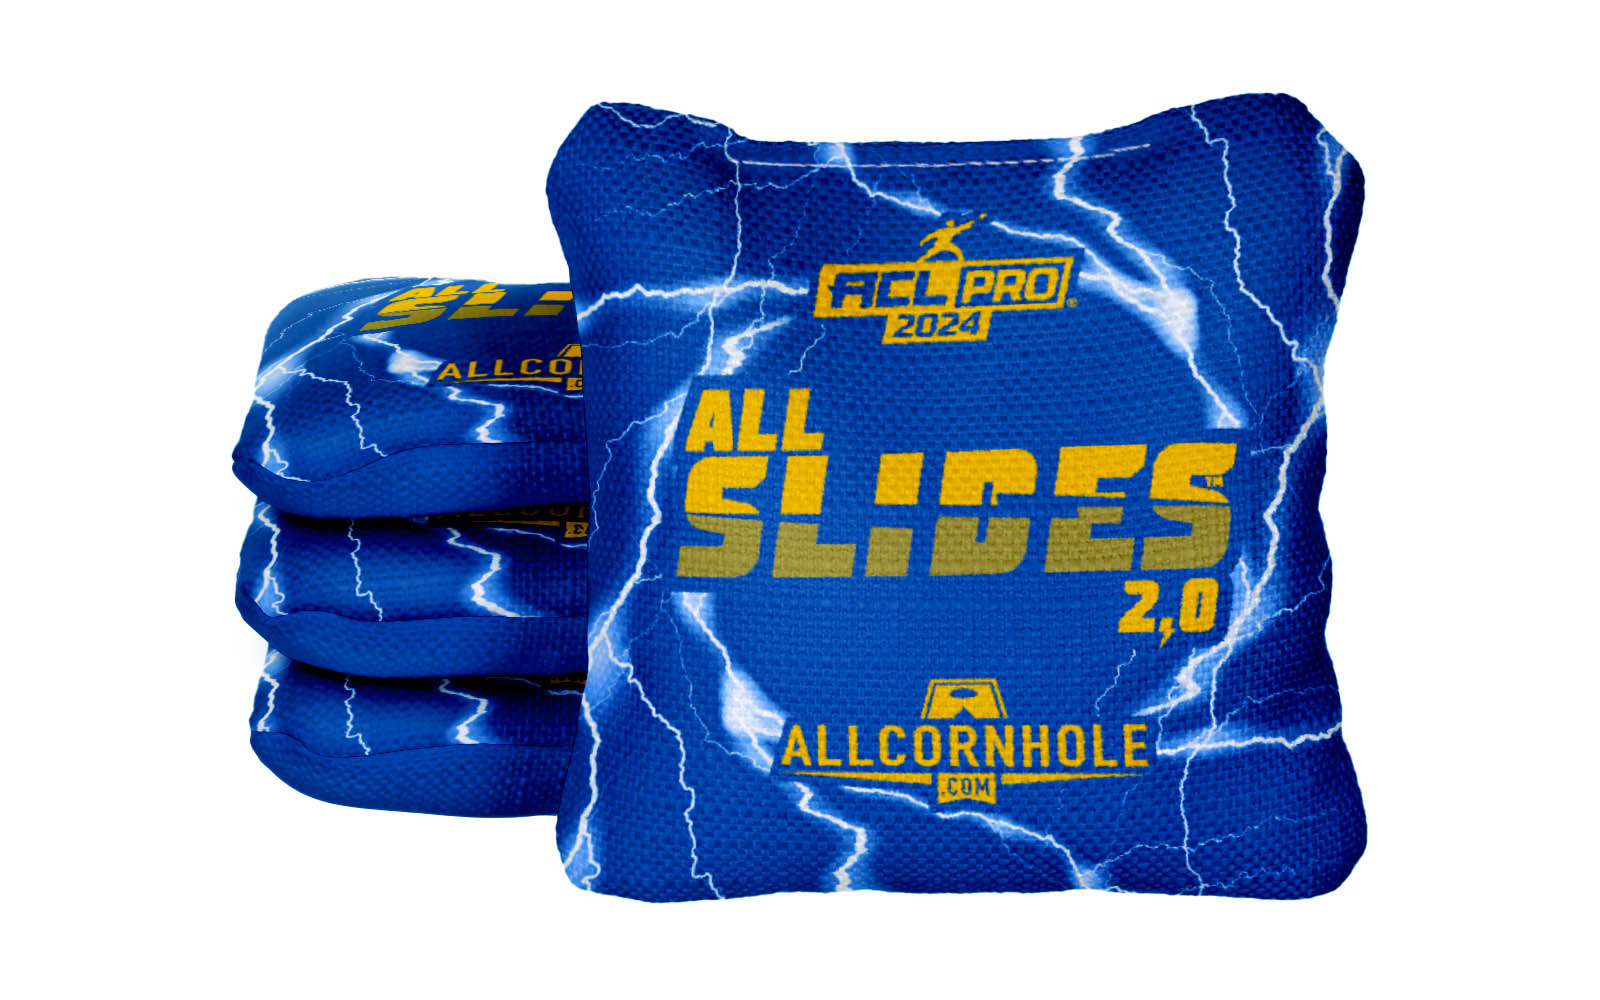 Officially Licensed Collegiate Cornhole Bags - AllCornhole All-Slide 2.0 - Set of 4 - University of Pittsburgh